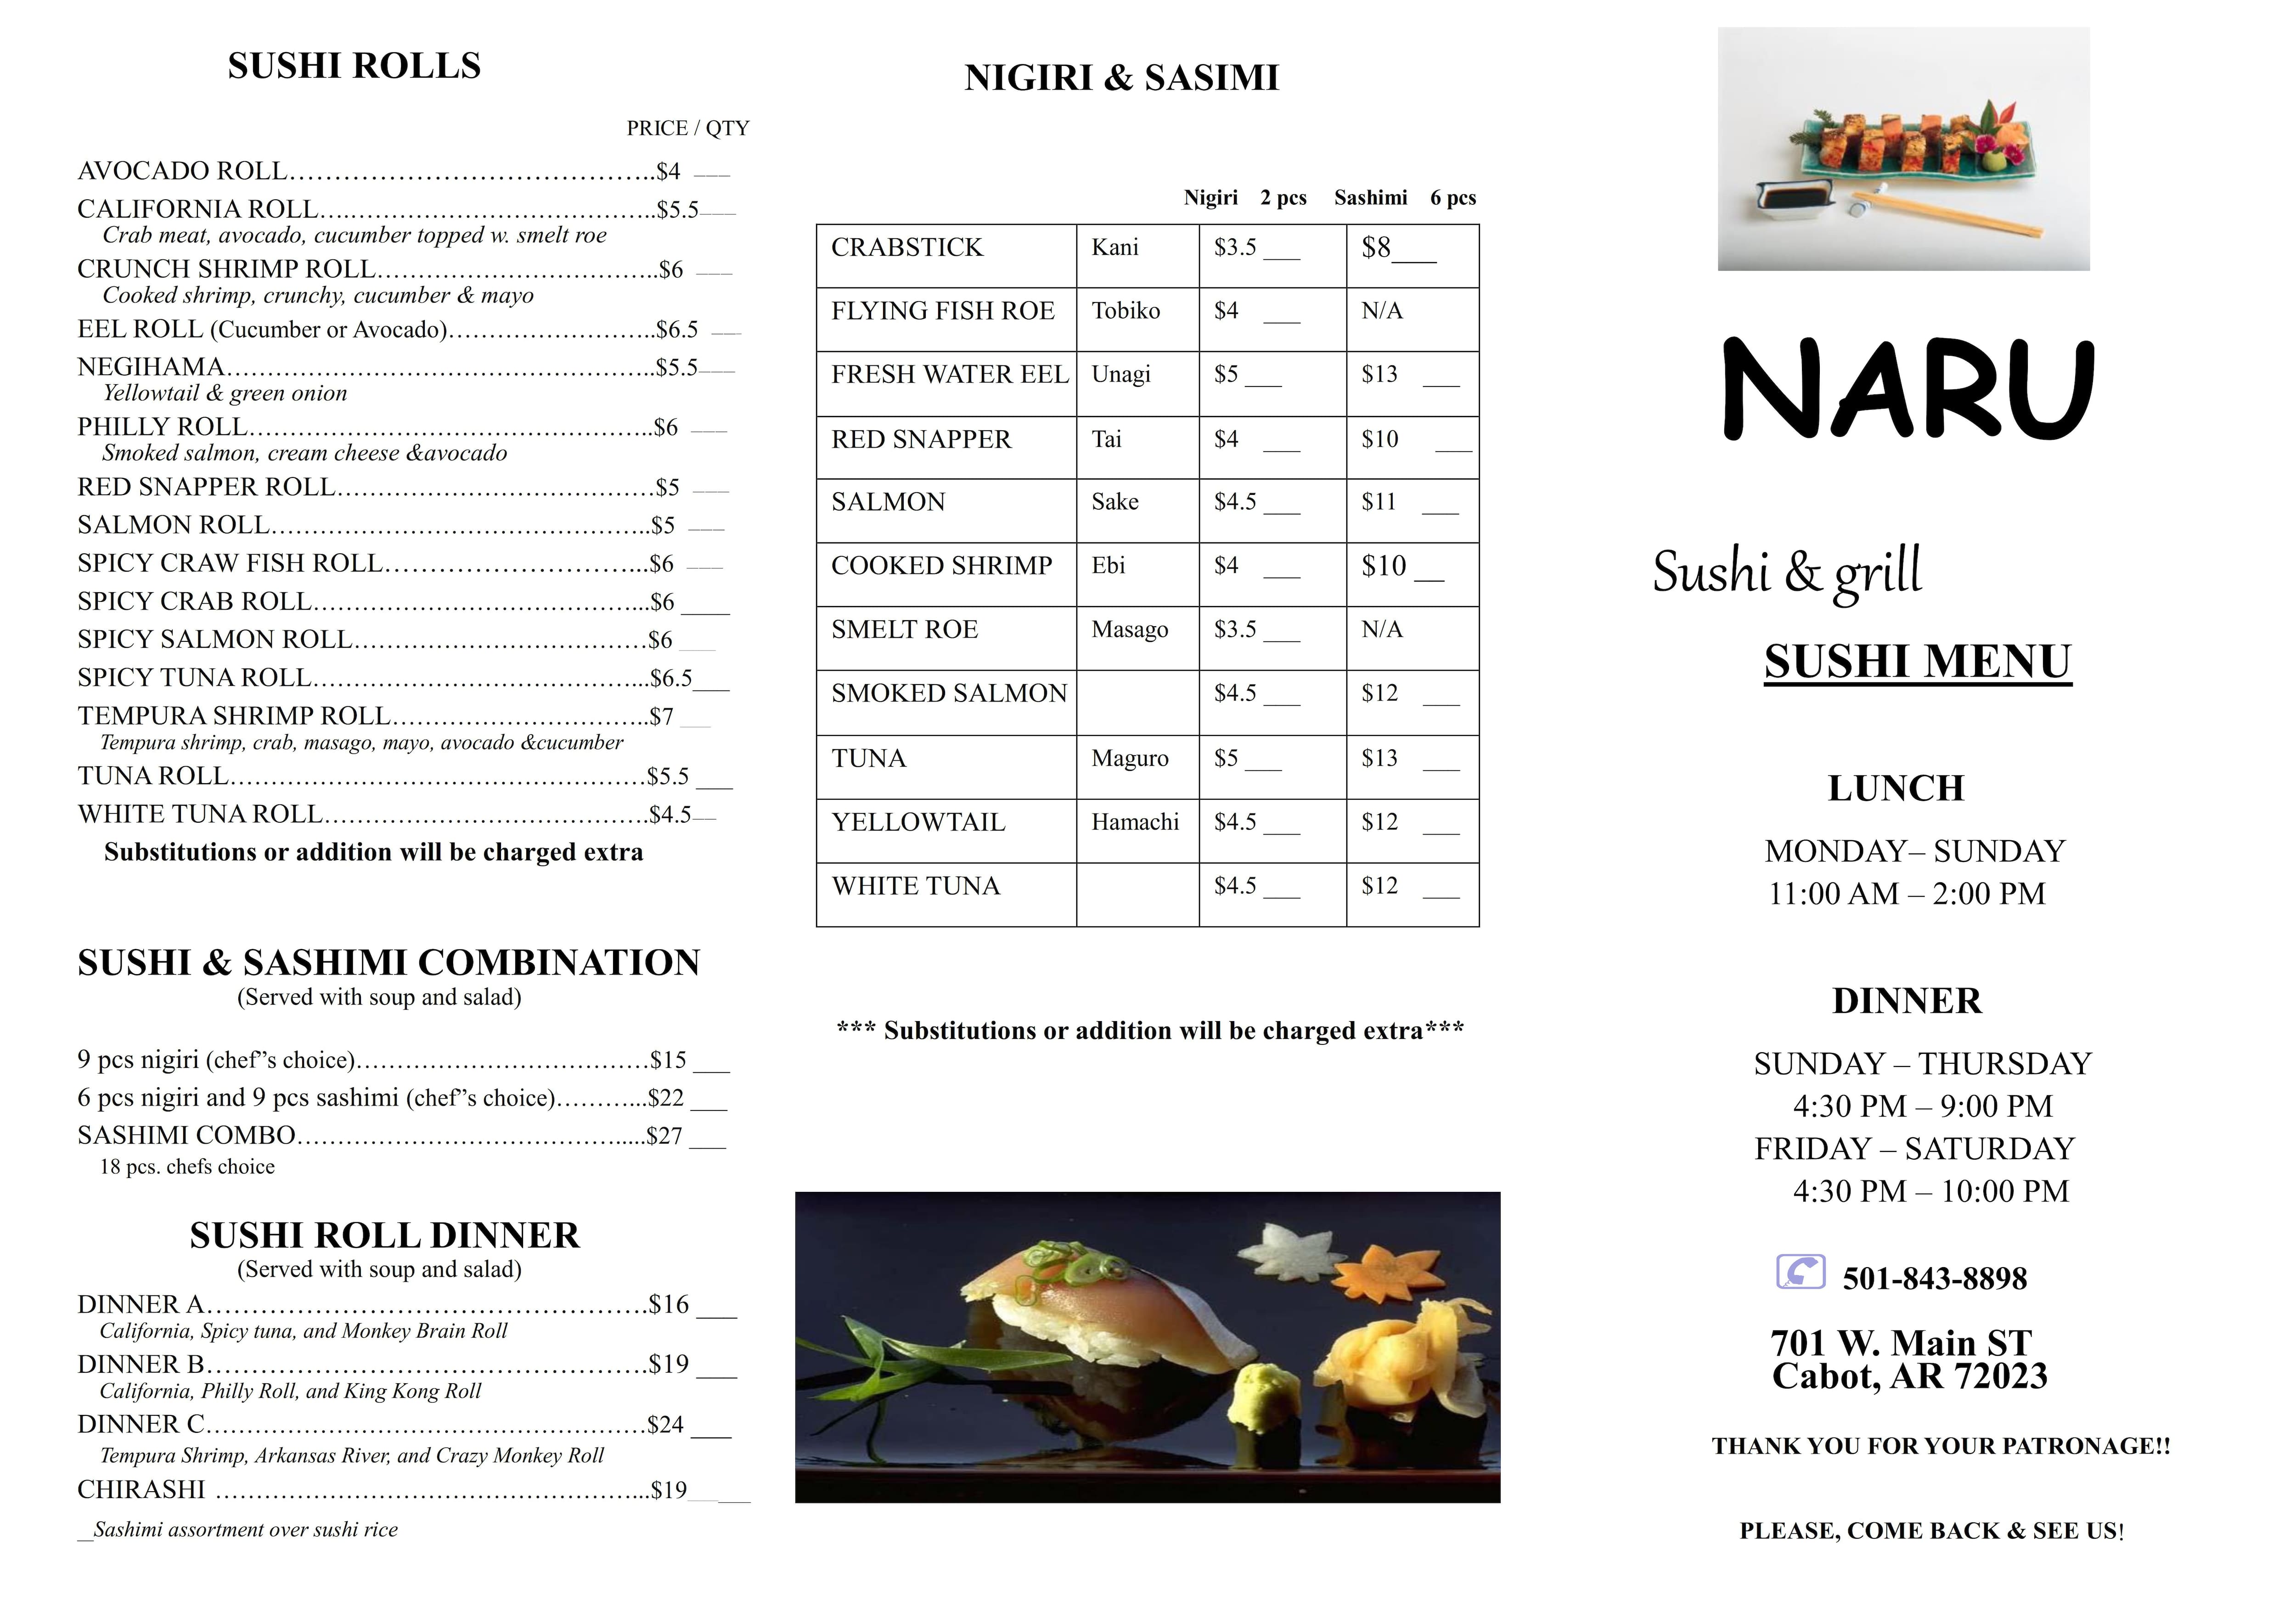 Menu at Naru Sushi & Grill restaurant, Cabot